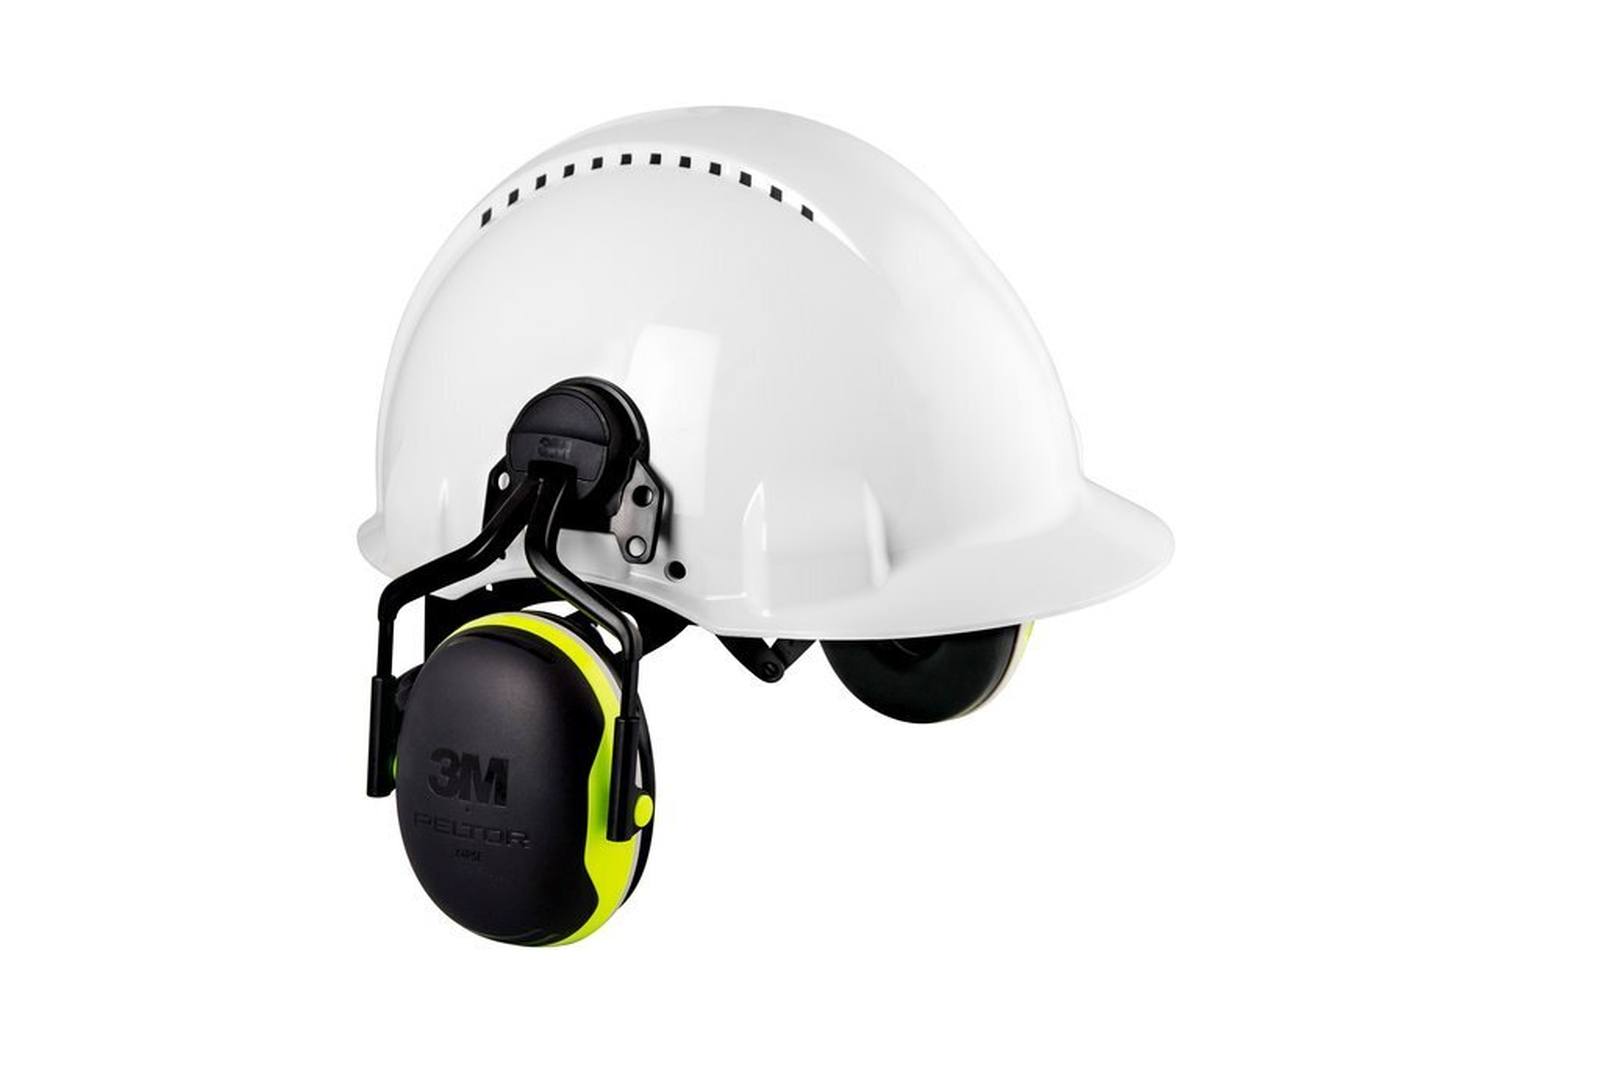 3M Peltor Kapselgehörschutz, X4P3E Helmbefestigung, neon, gelb, SNR = 32 dB mit Helmadapter P3E (für alle 3M Helme, ausgenommen G2000)